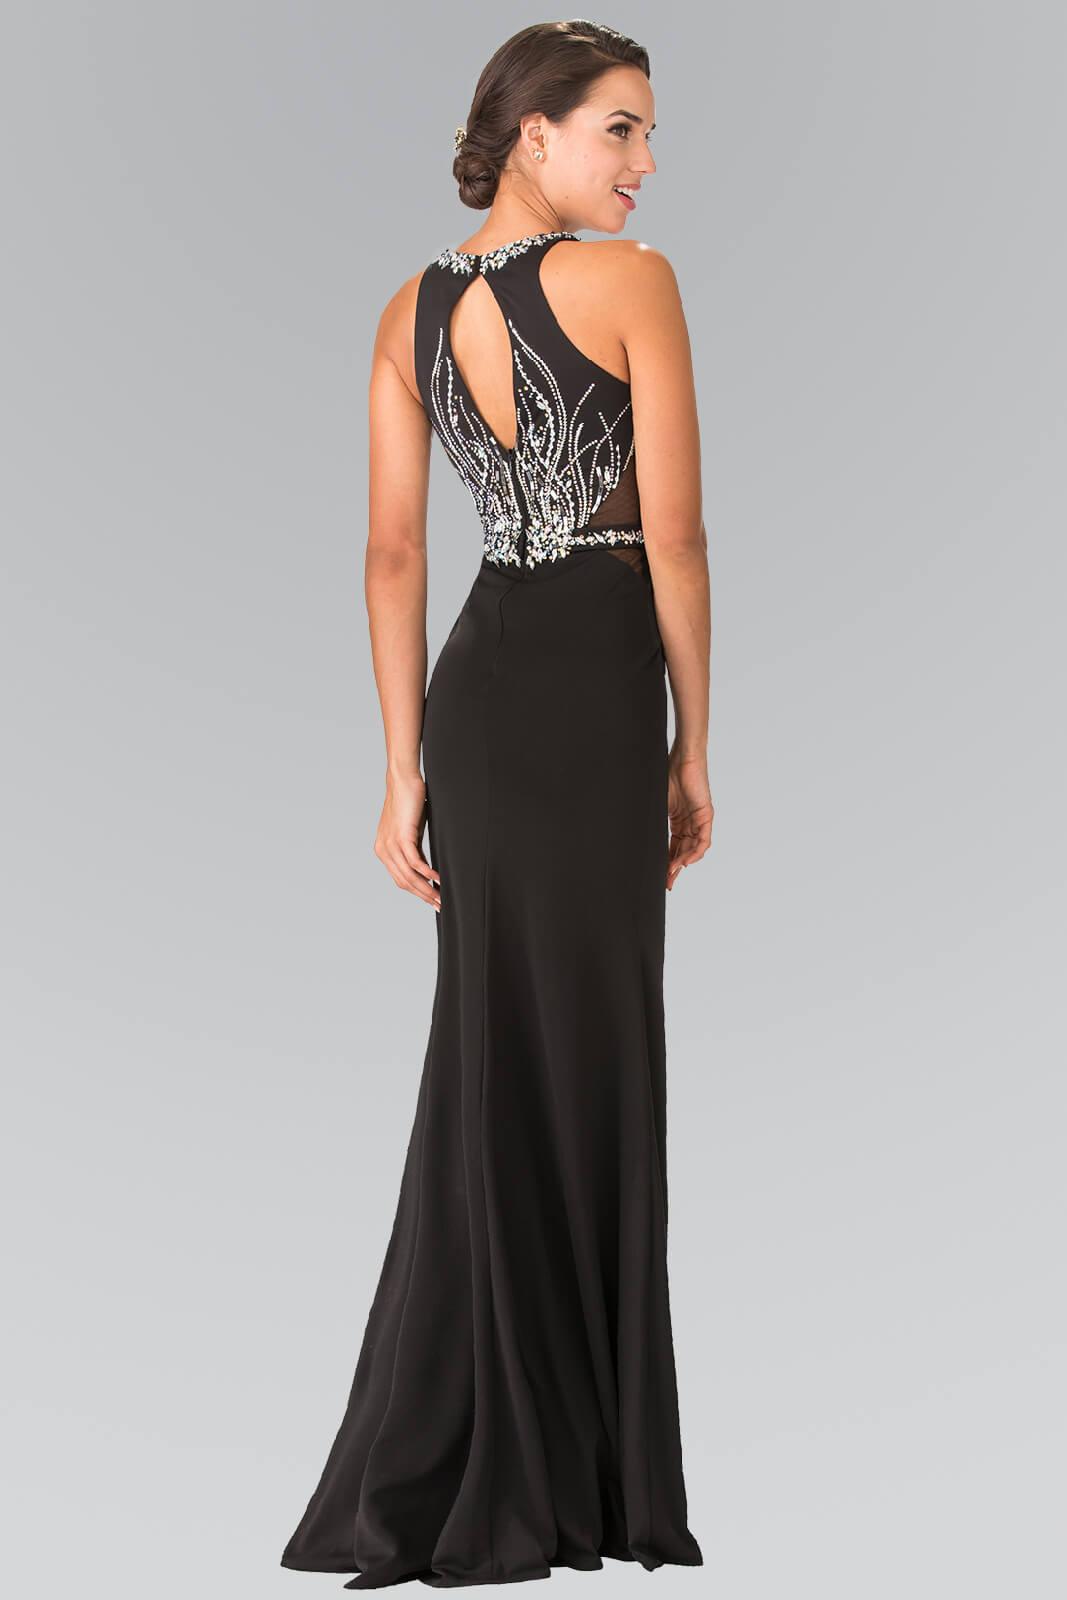 Black Prom Beaded Formal Dress Trumpet Gown | DressOutlet for $227.99 ...